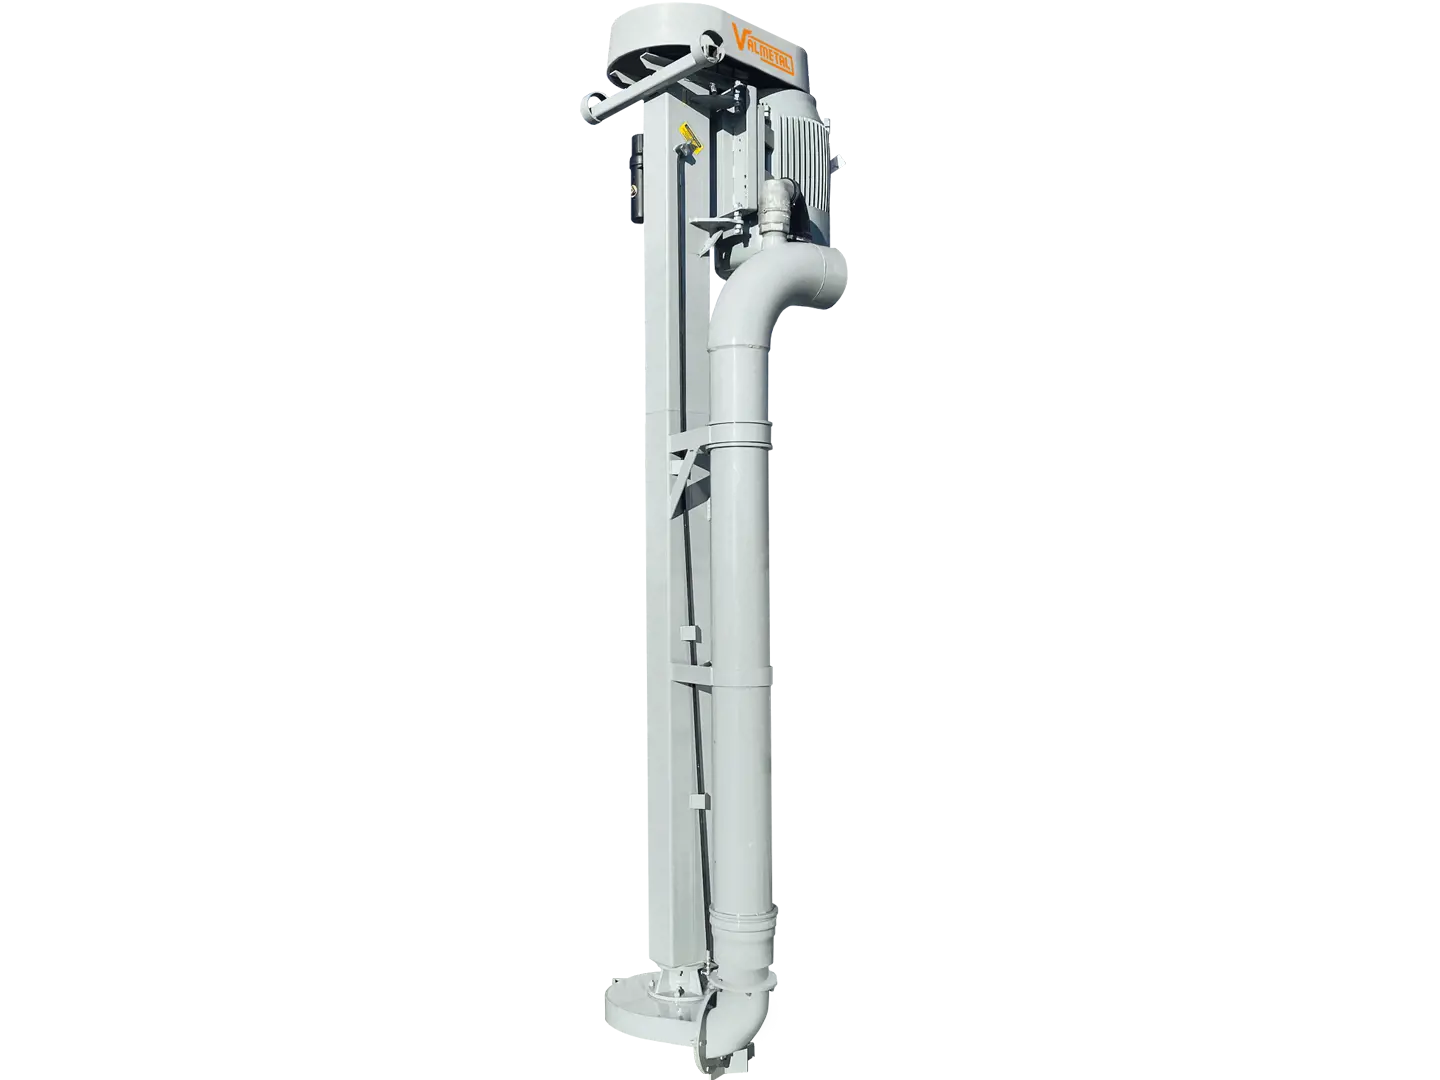 Industrial-series - Vertical pumps